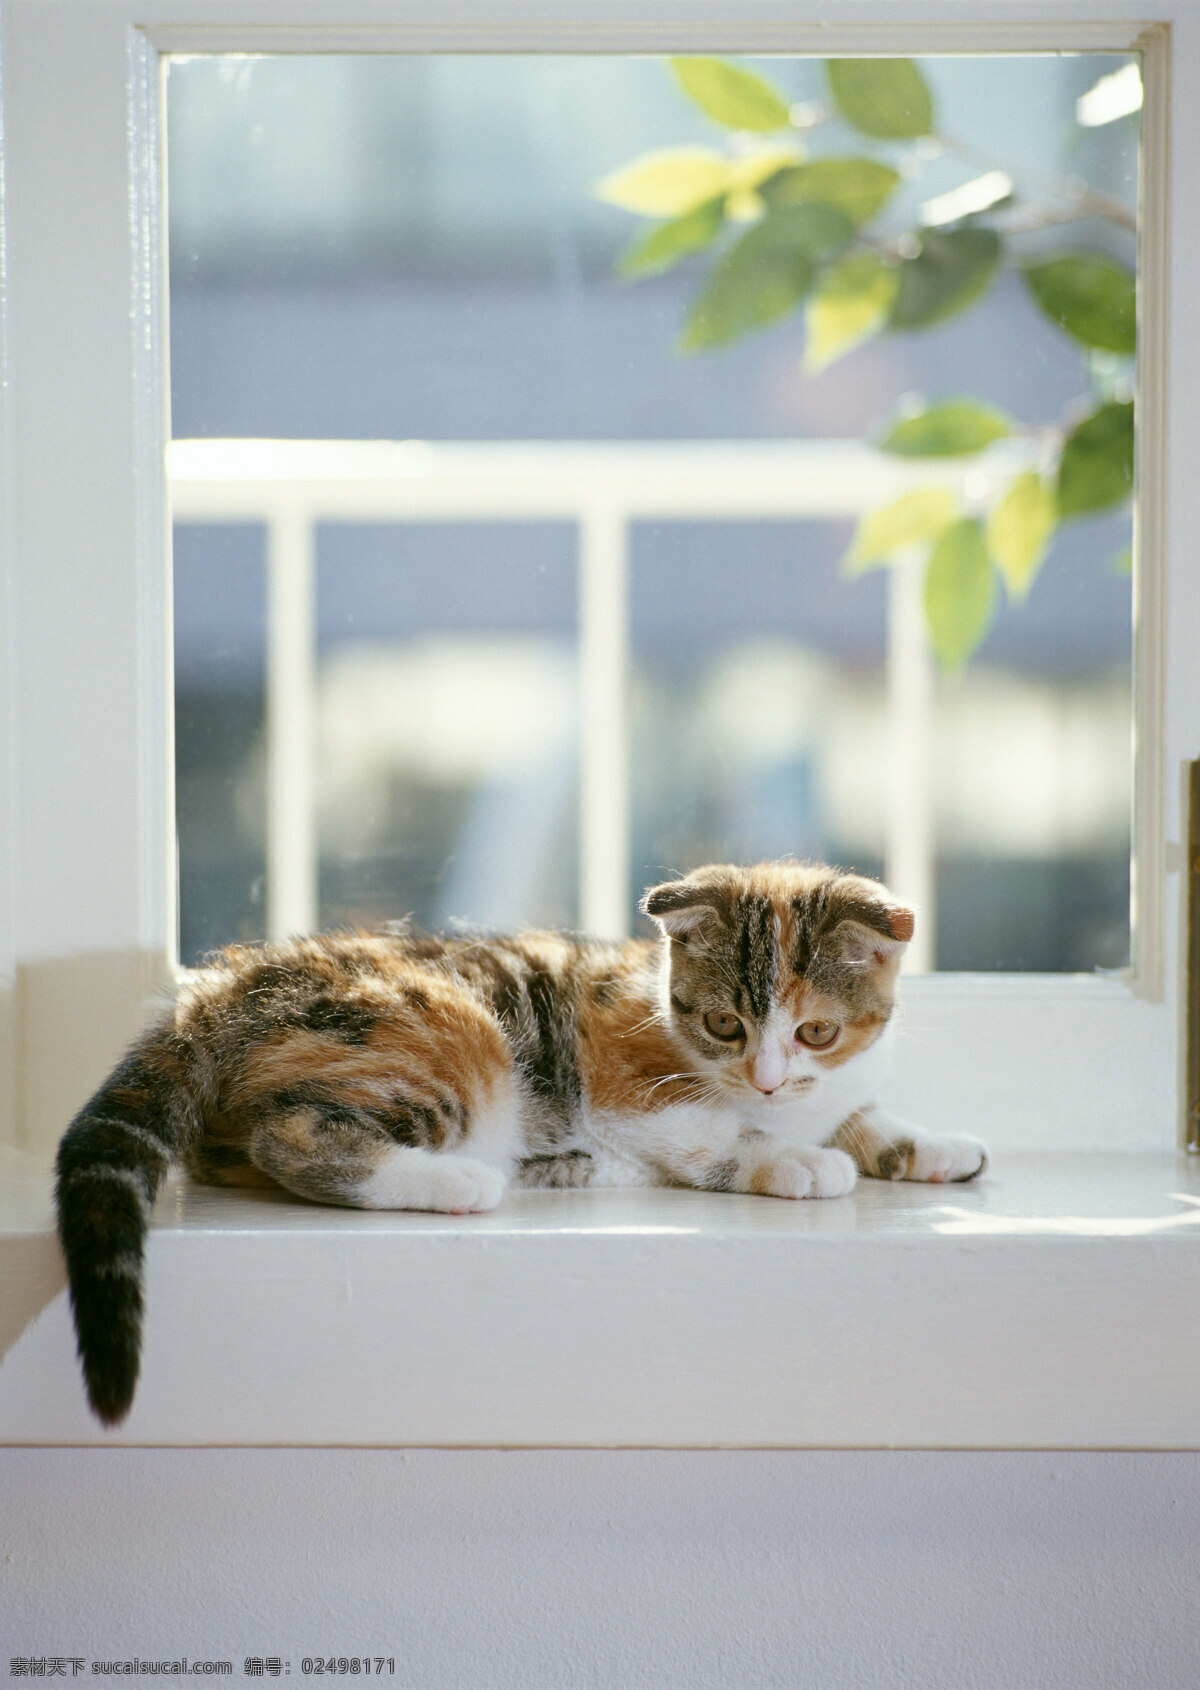 趴在 窗台 上 小花 猫 小猫 动物摄影 宠物 可爱的猫 家猫 猫咪 小猫图片 家禽家畜 生物世界 猫咪图片